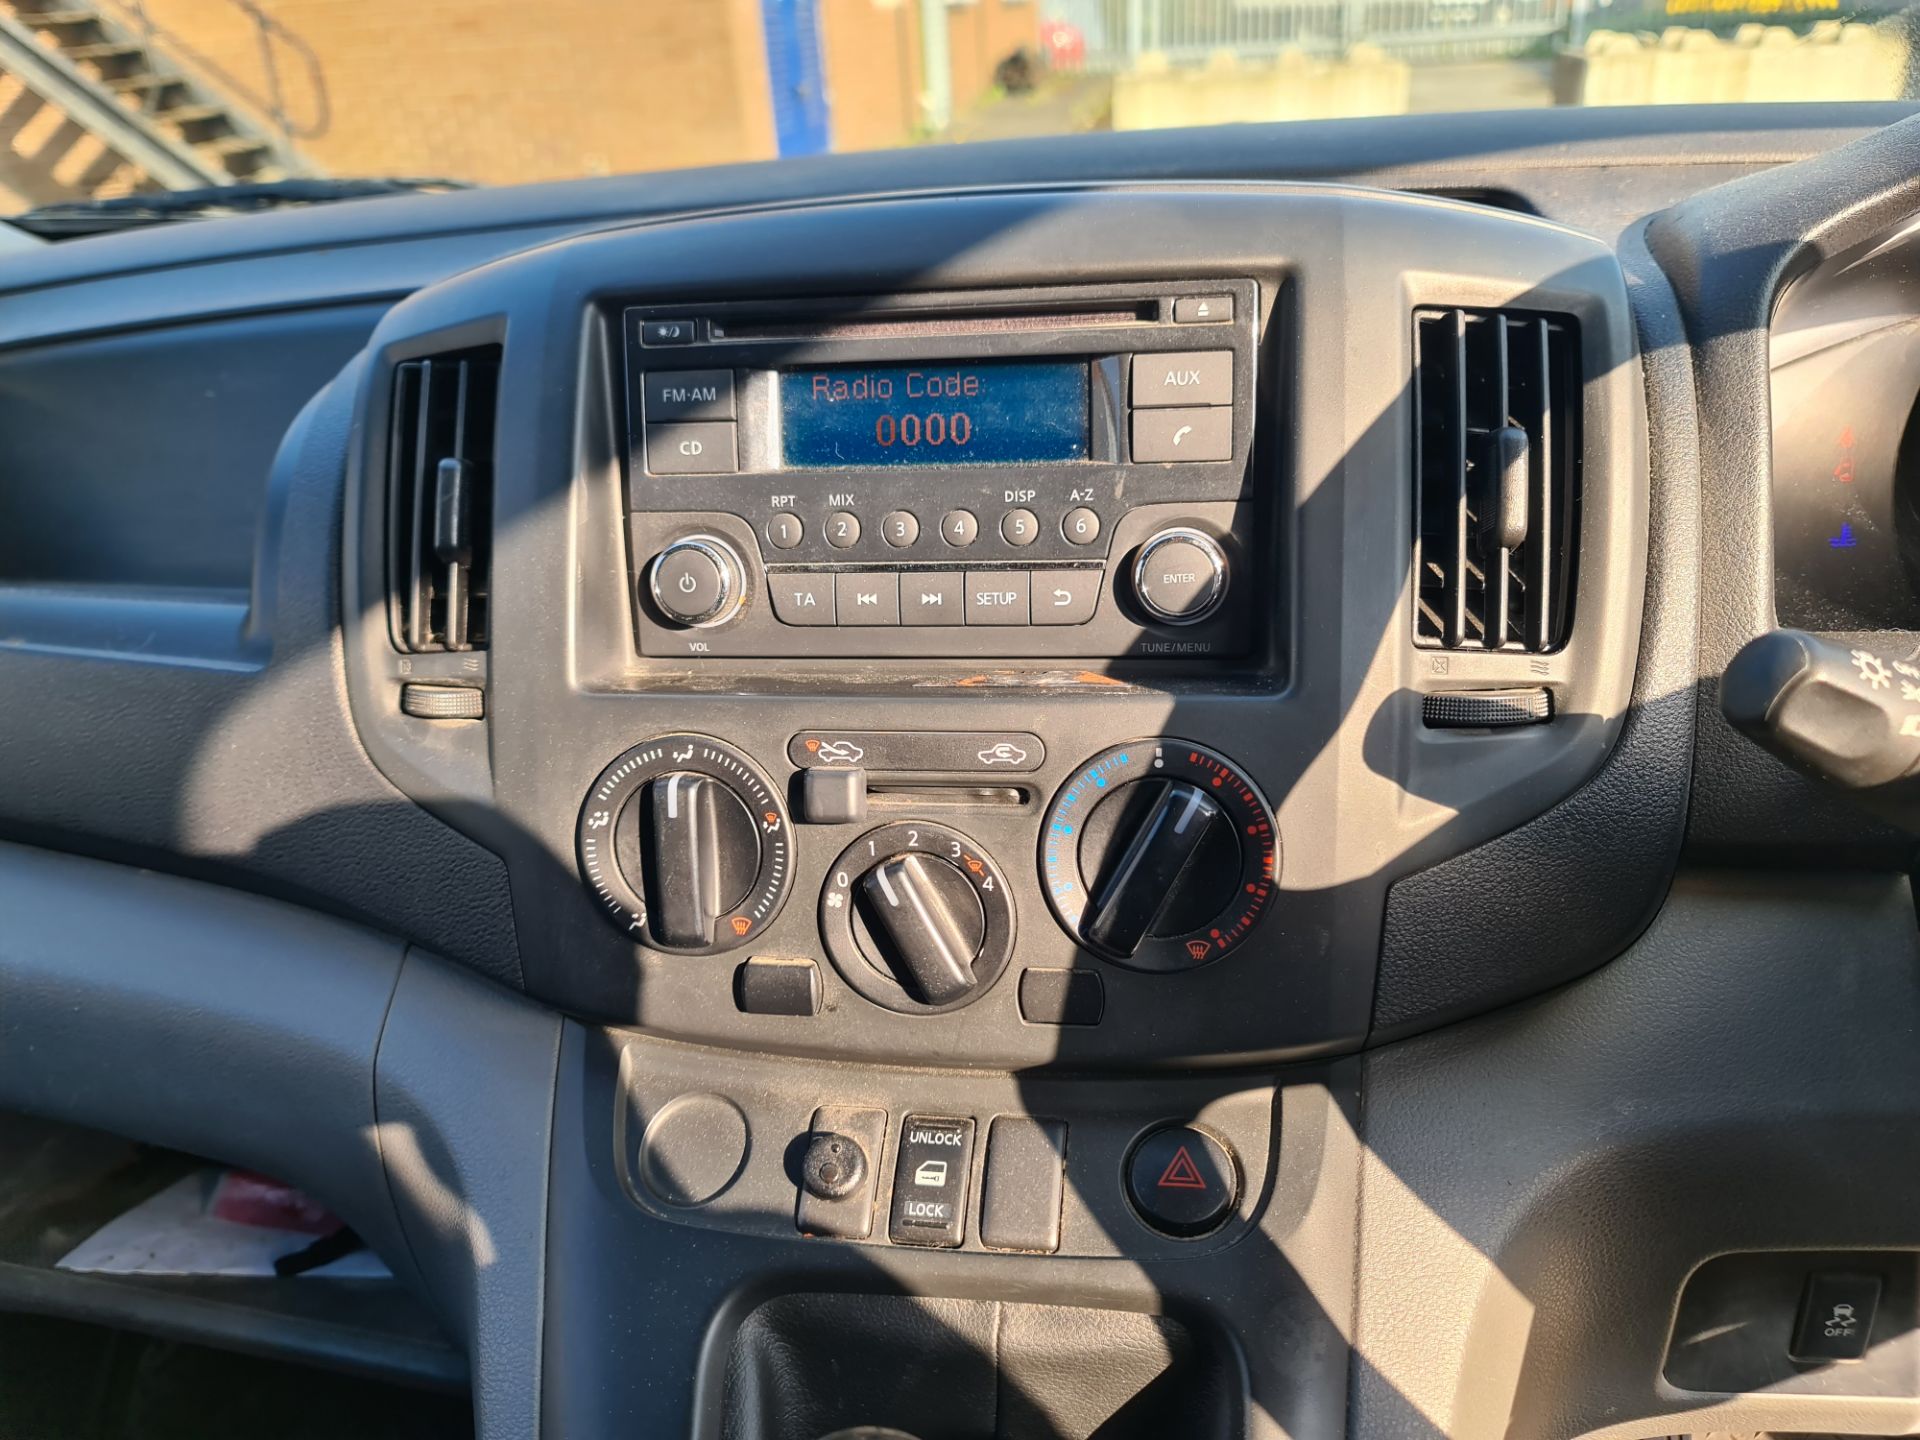 2018 Nissan NV200 Acenta DCI car derived van - Image 81 of 93